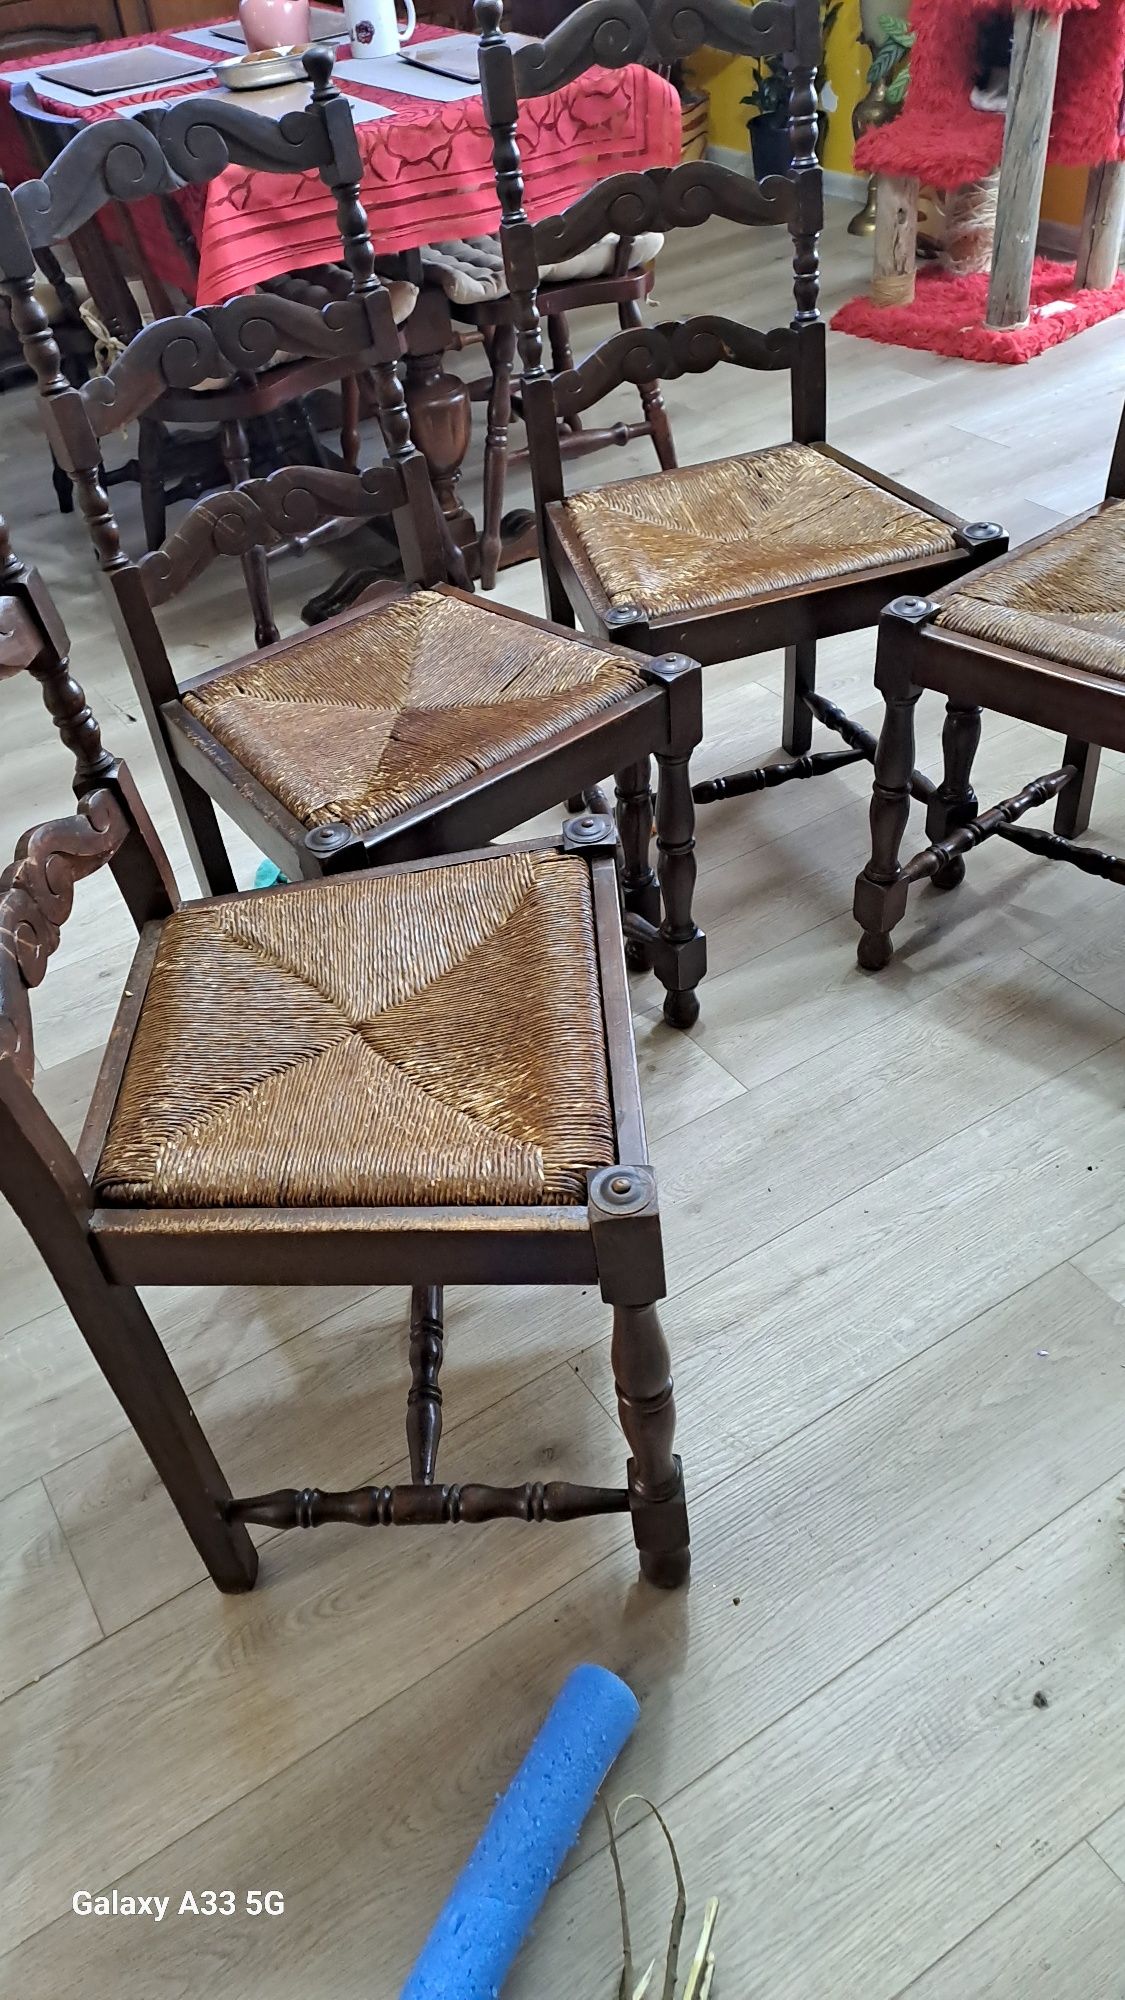 Krzesła dębowe cztery